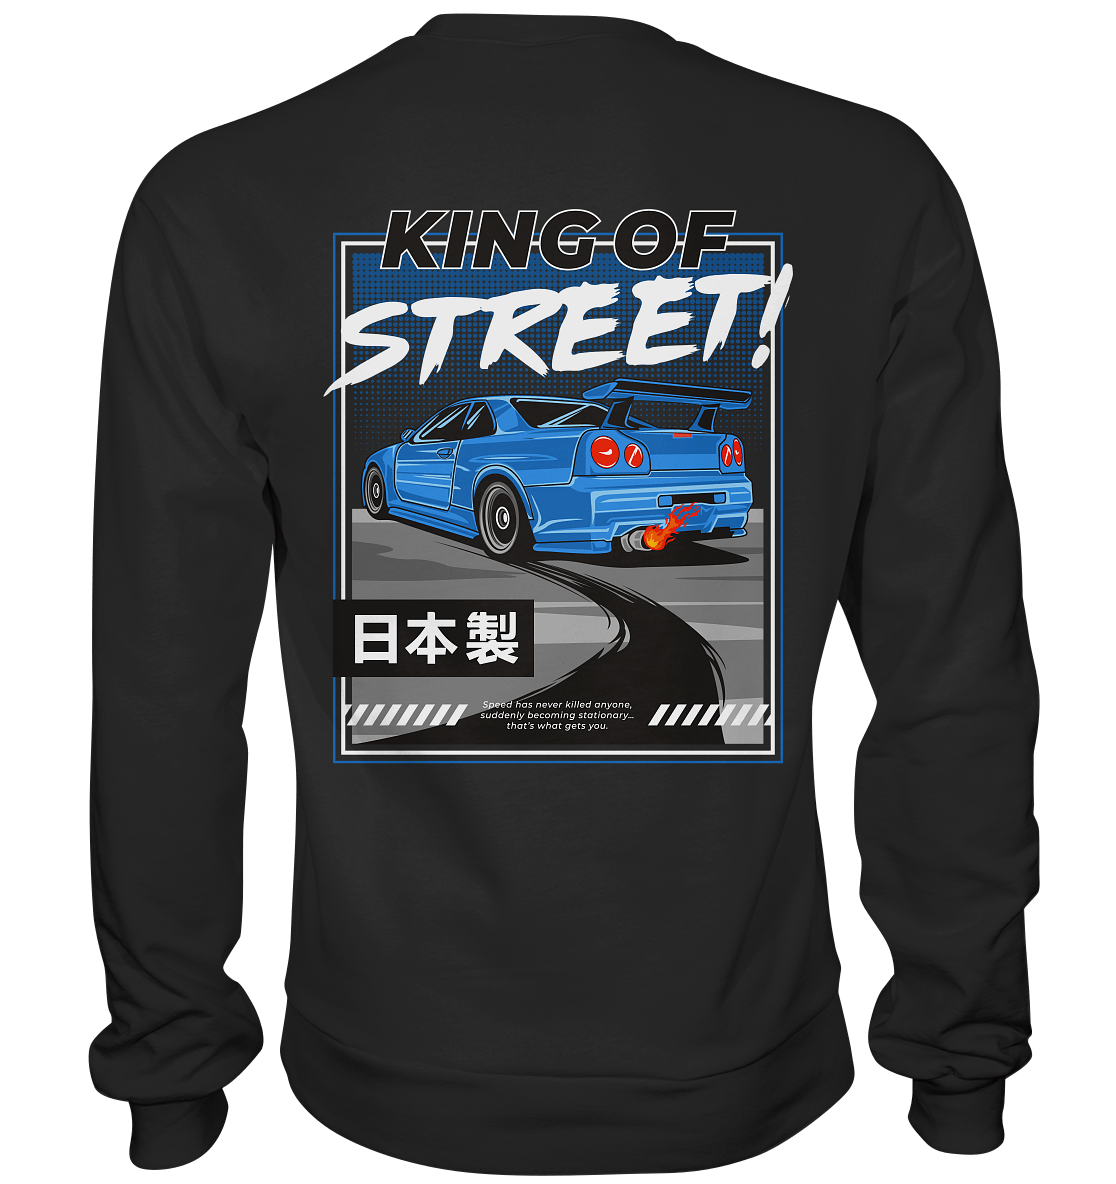 King of Street R34 - Premium Sweatshirt - MotoMerch.de